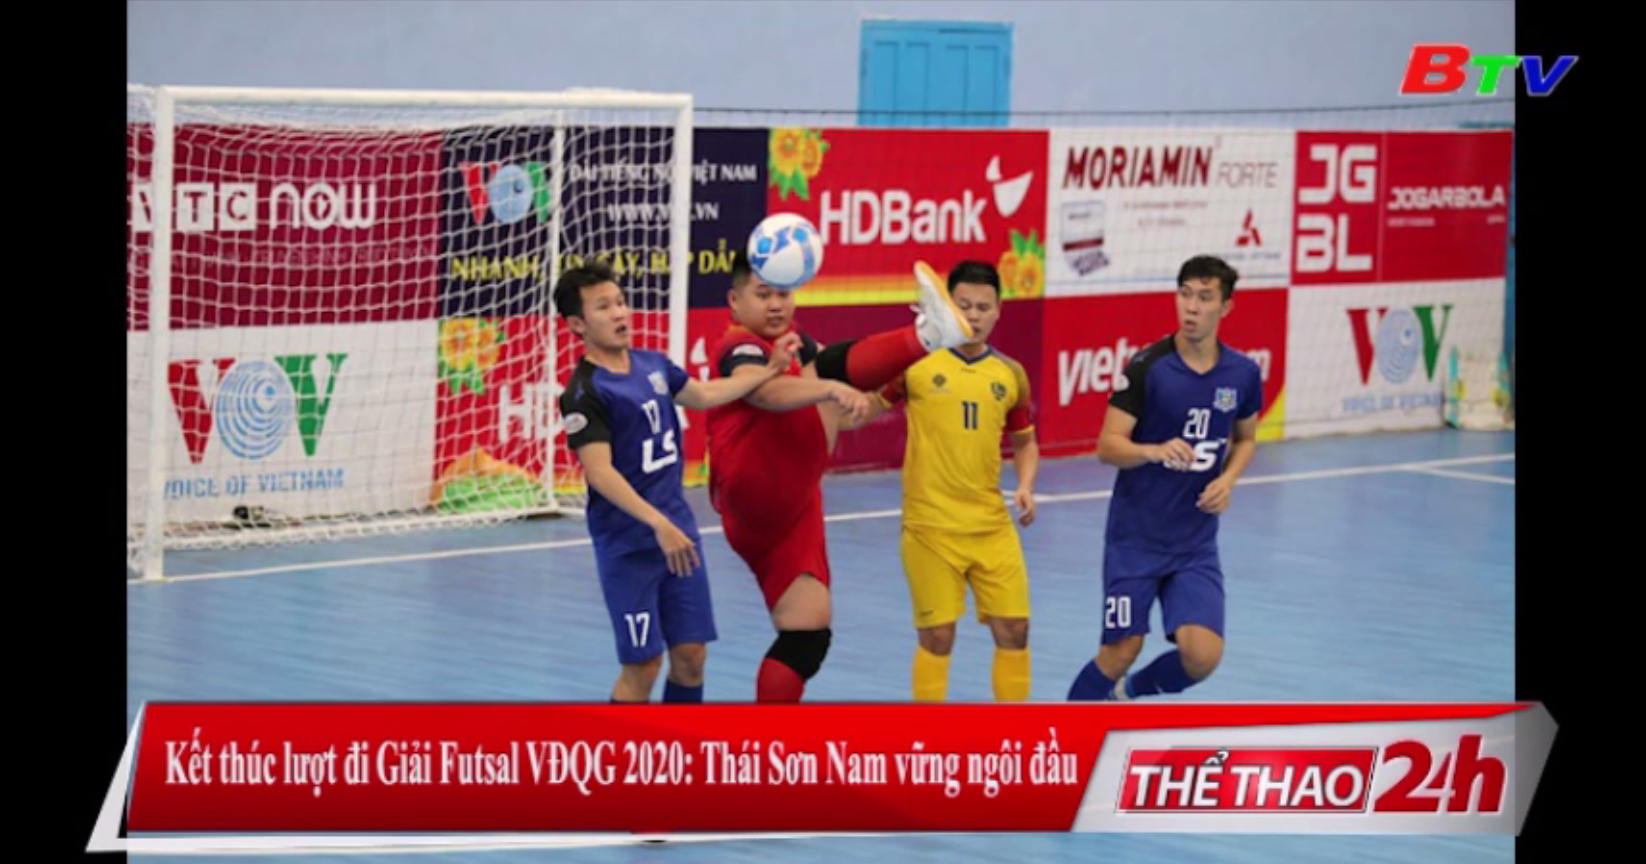 Kết thúc lượt đi Giải Futsal VĐQG 2020 – Thái Sơn Nam vững ngôi đầu